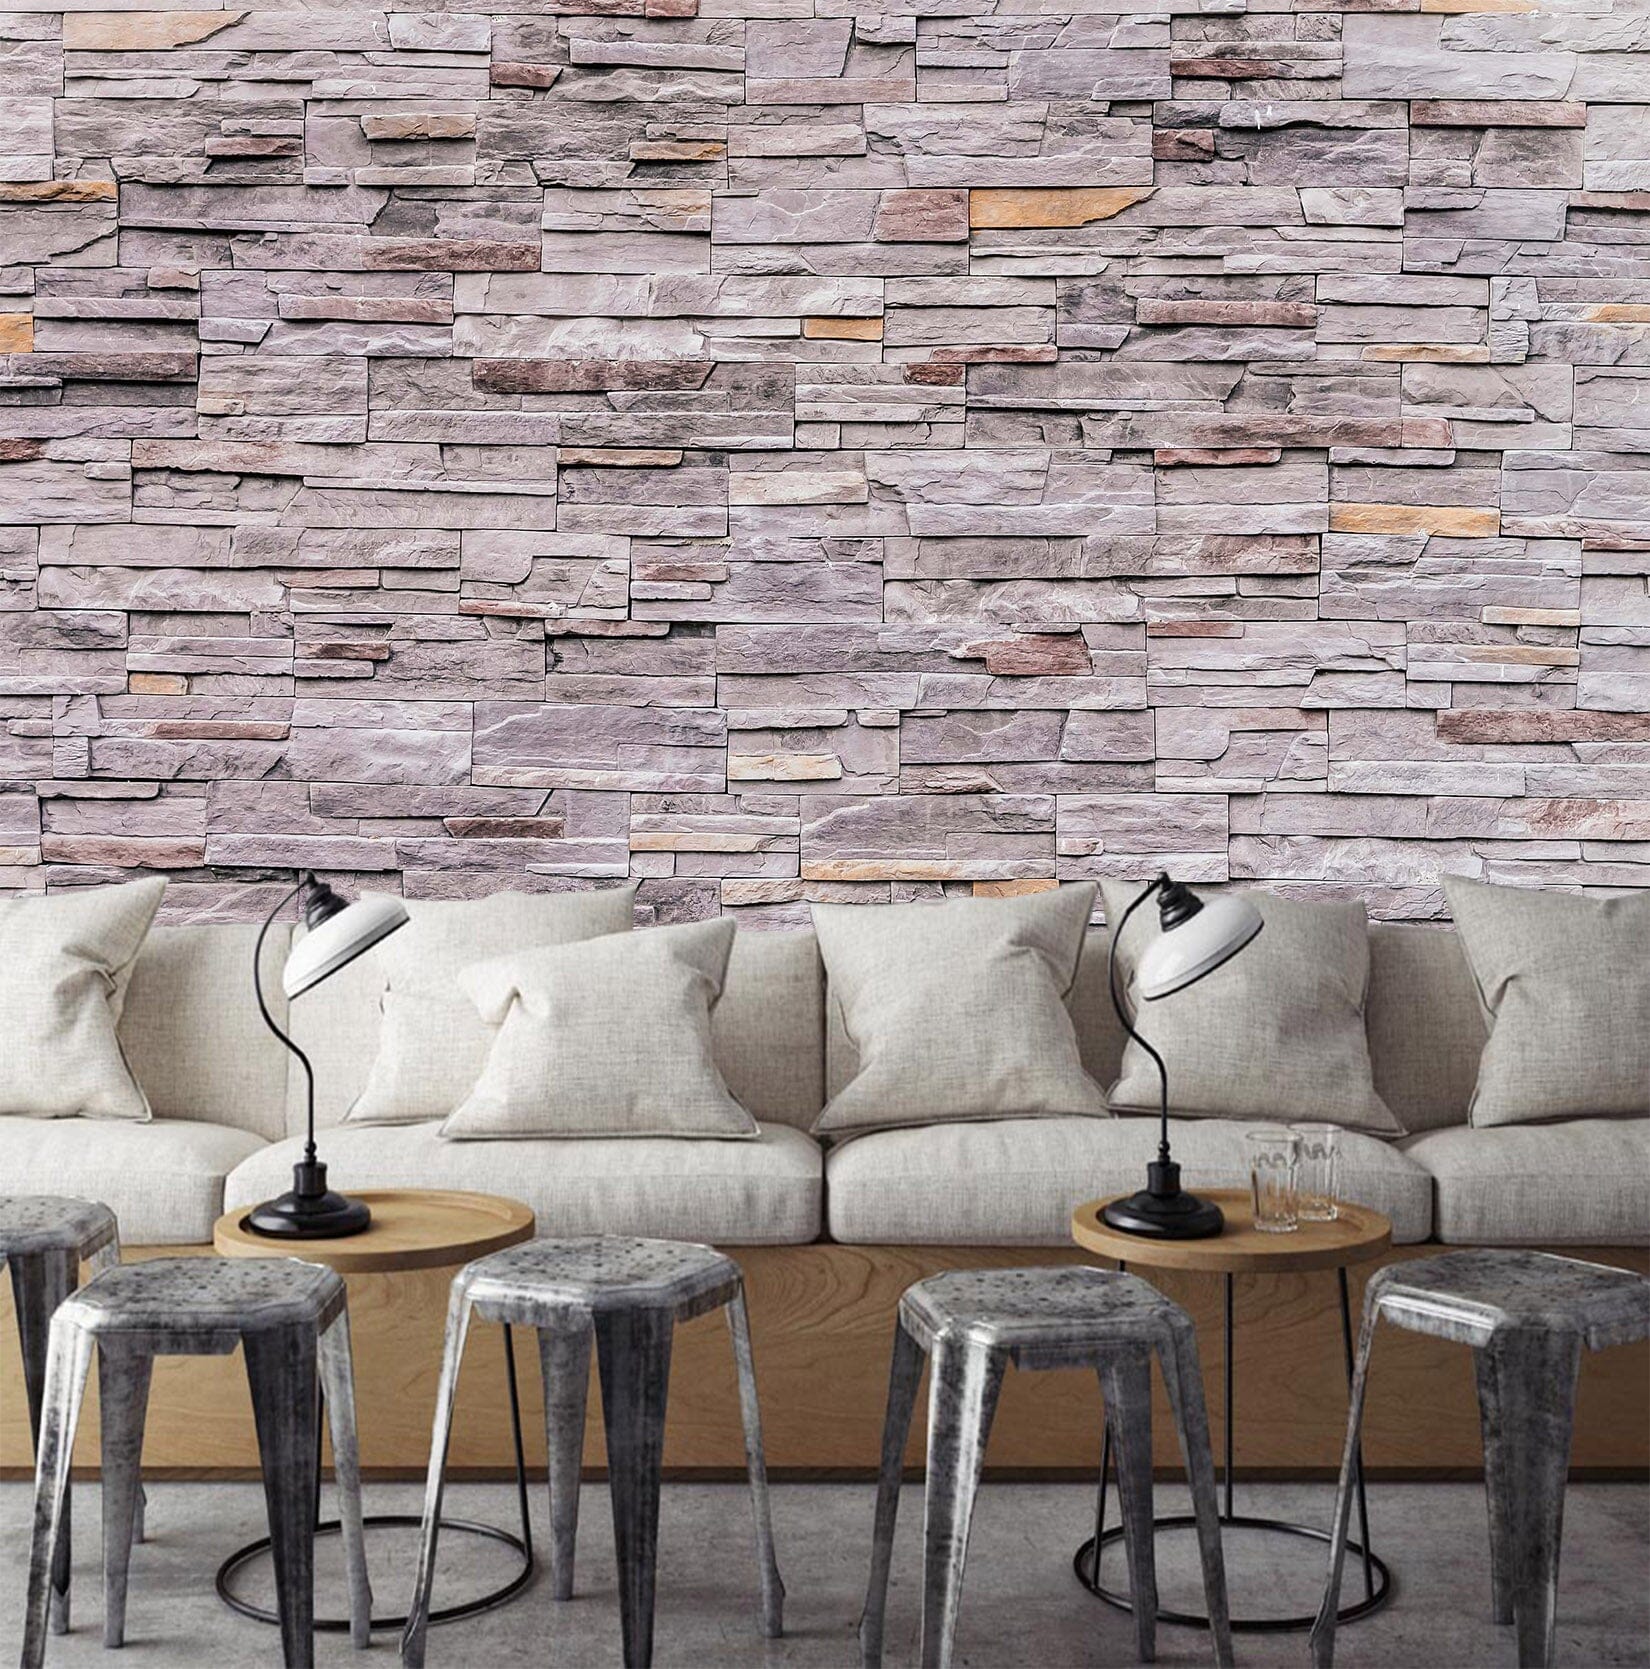 3D Grey Bricks 1421 Wall Murals Wallpaper AJ Wallpaper 2 